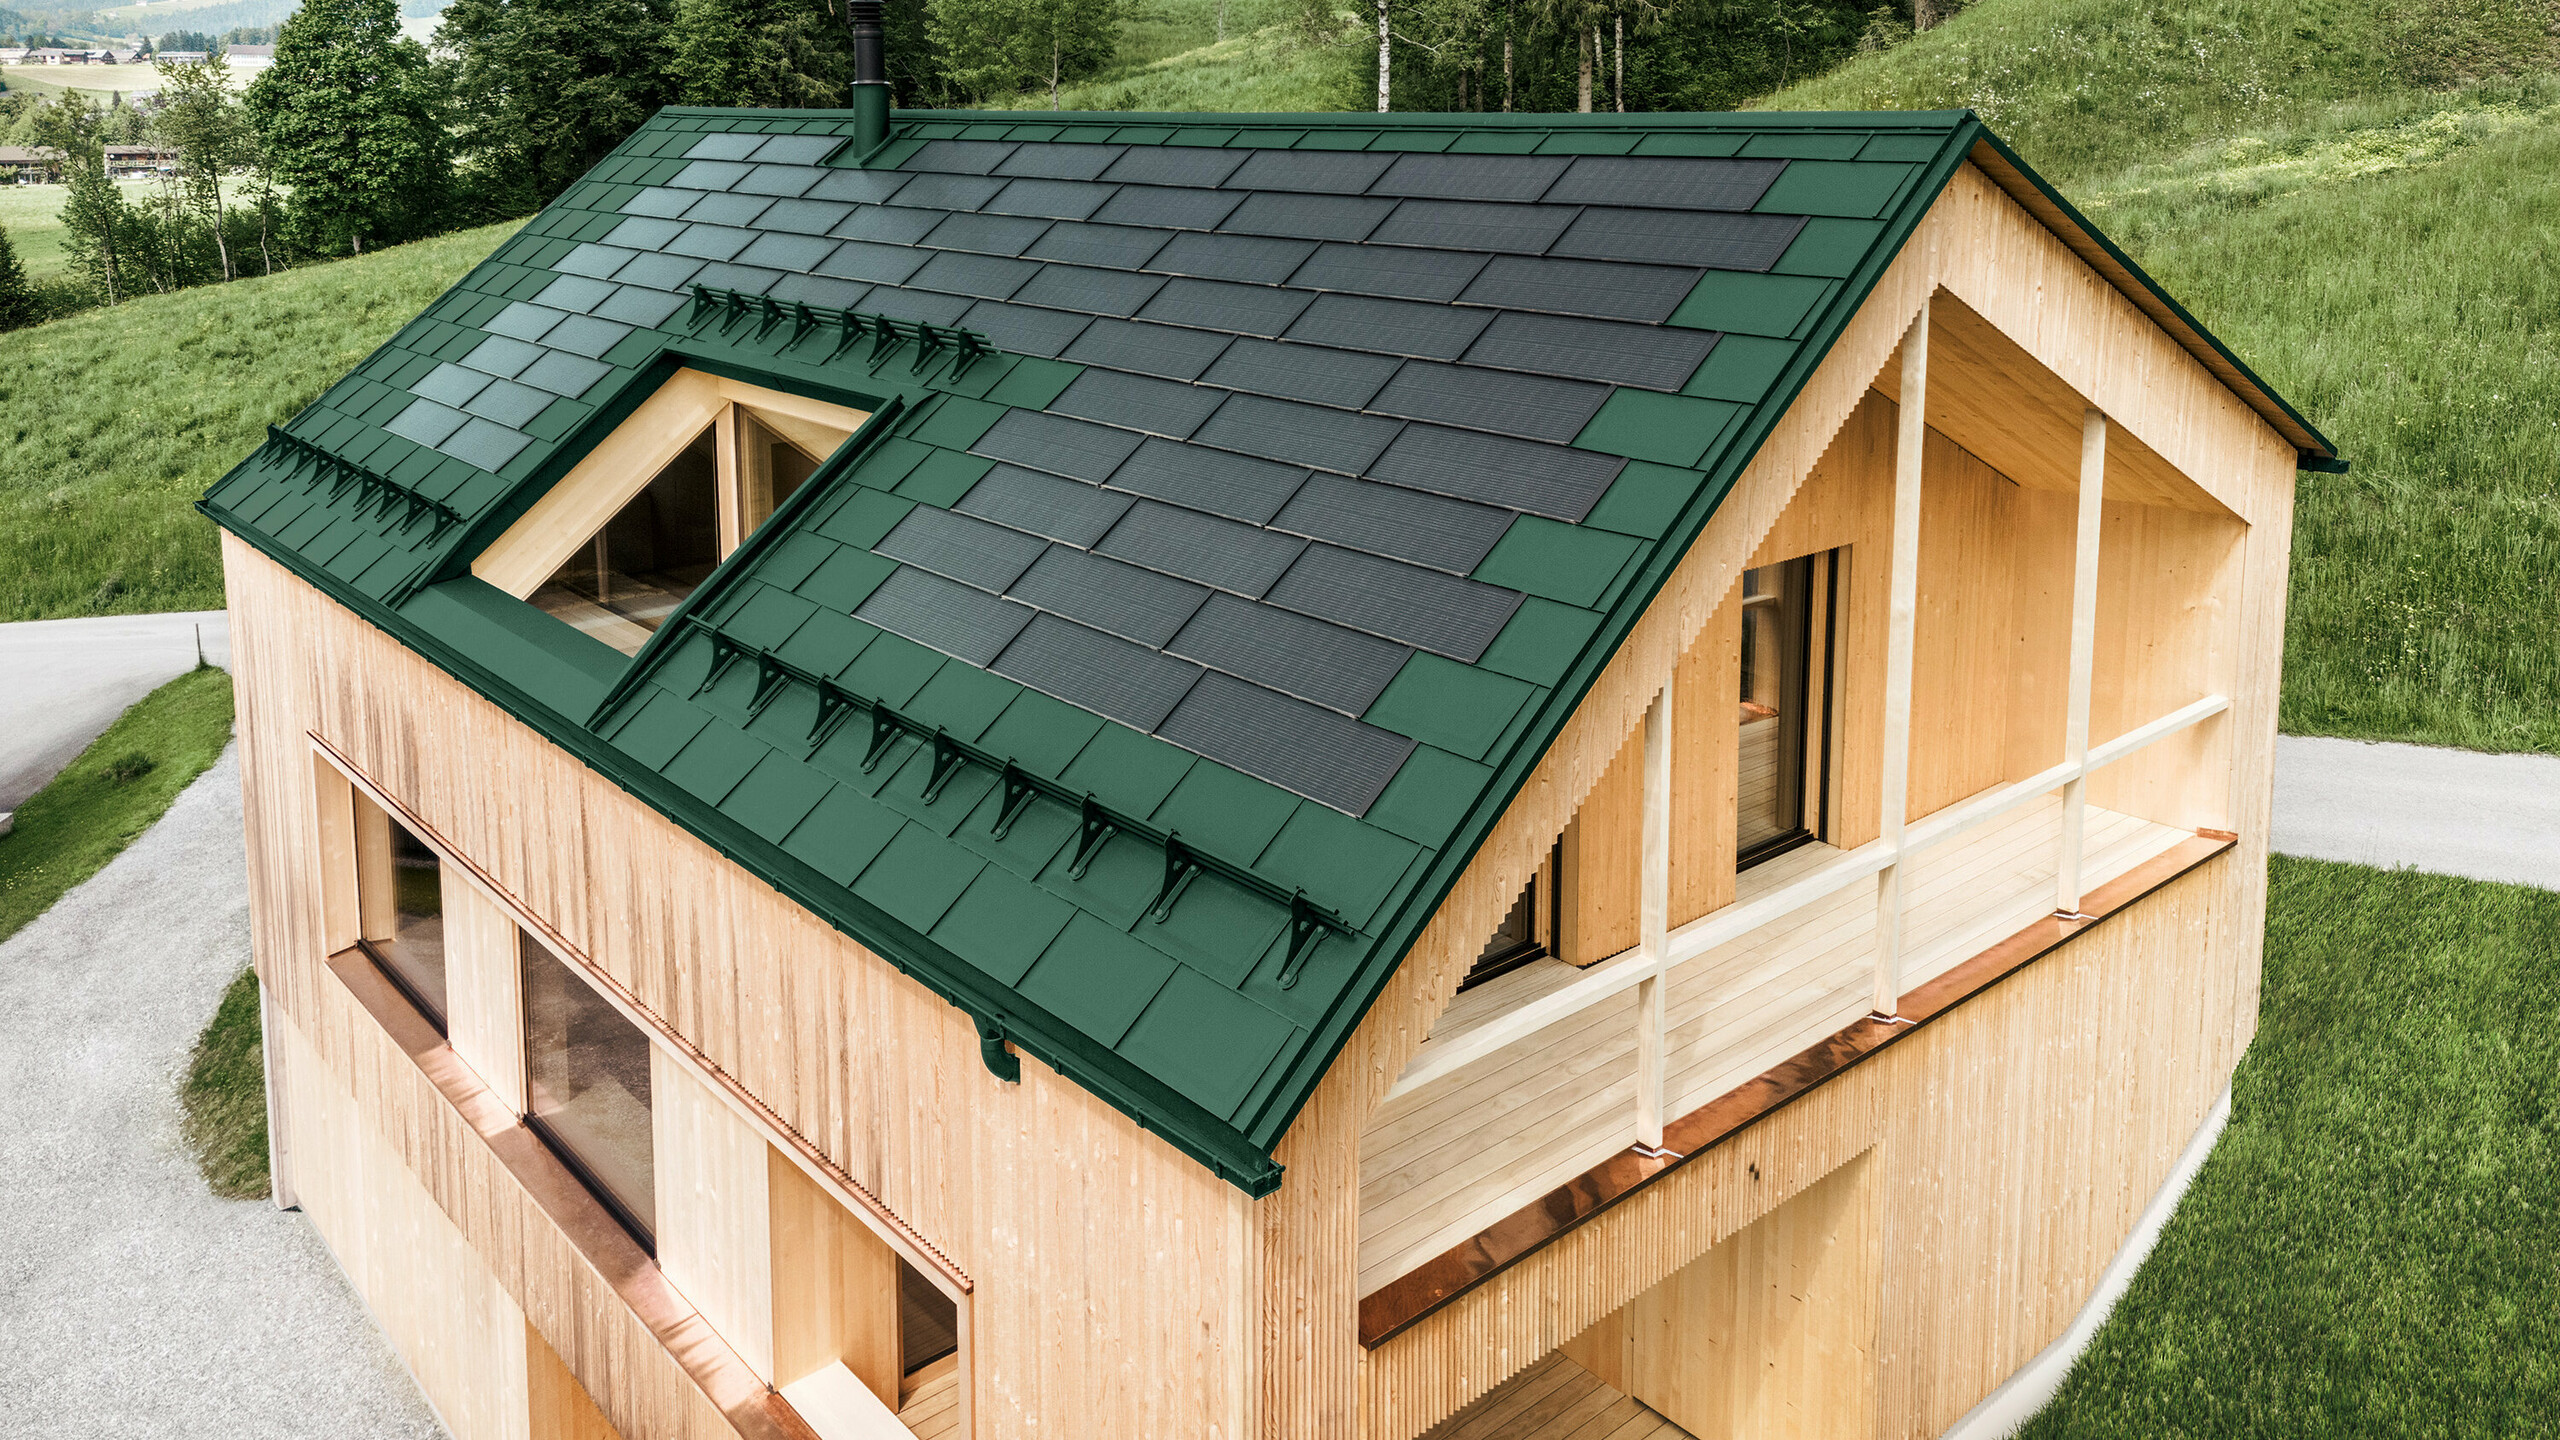 Maison individuelle dans la localité autrichienne d'Egg avec le panneau solaire de toiture PREFA et le panneau de toiture R.16 en vert mousse, combinés à une façade en bois